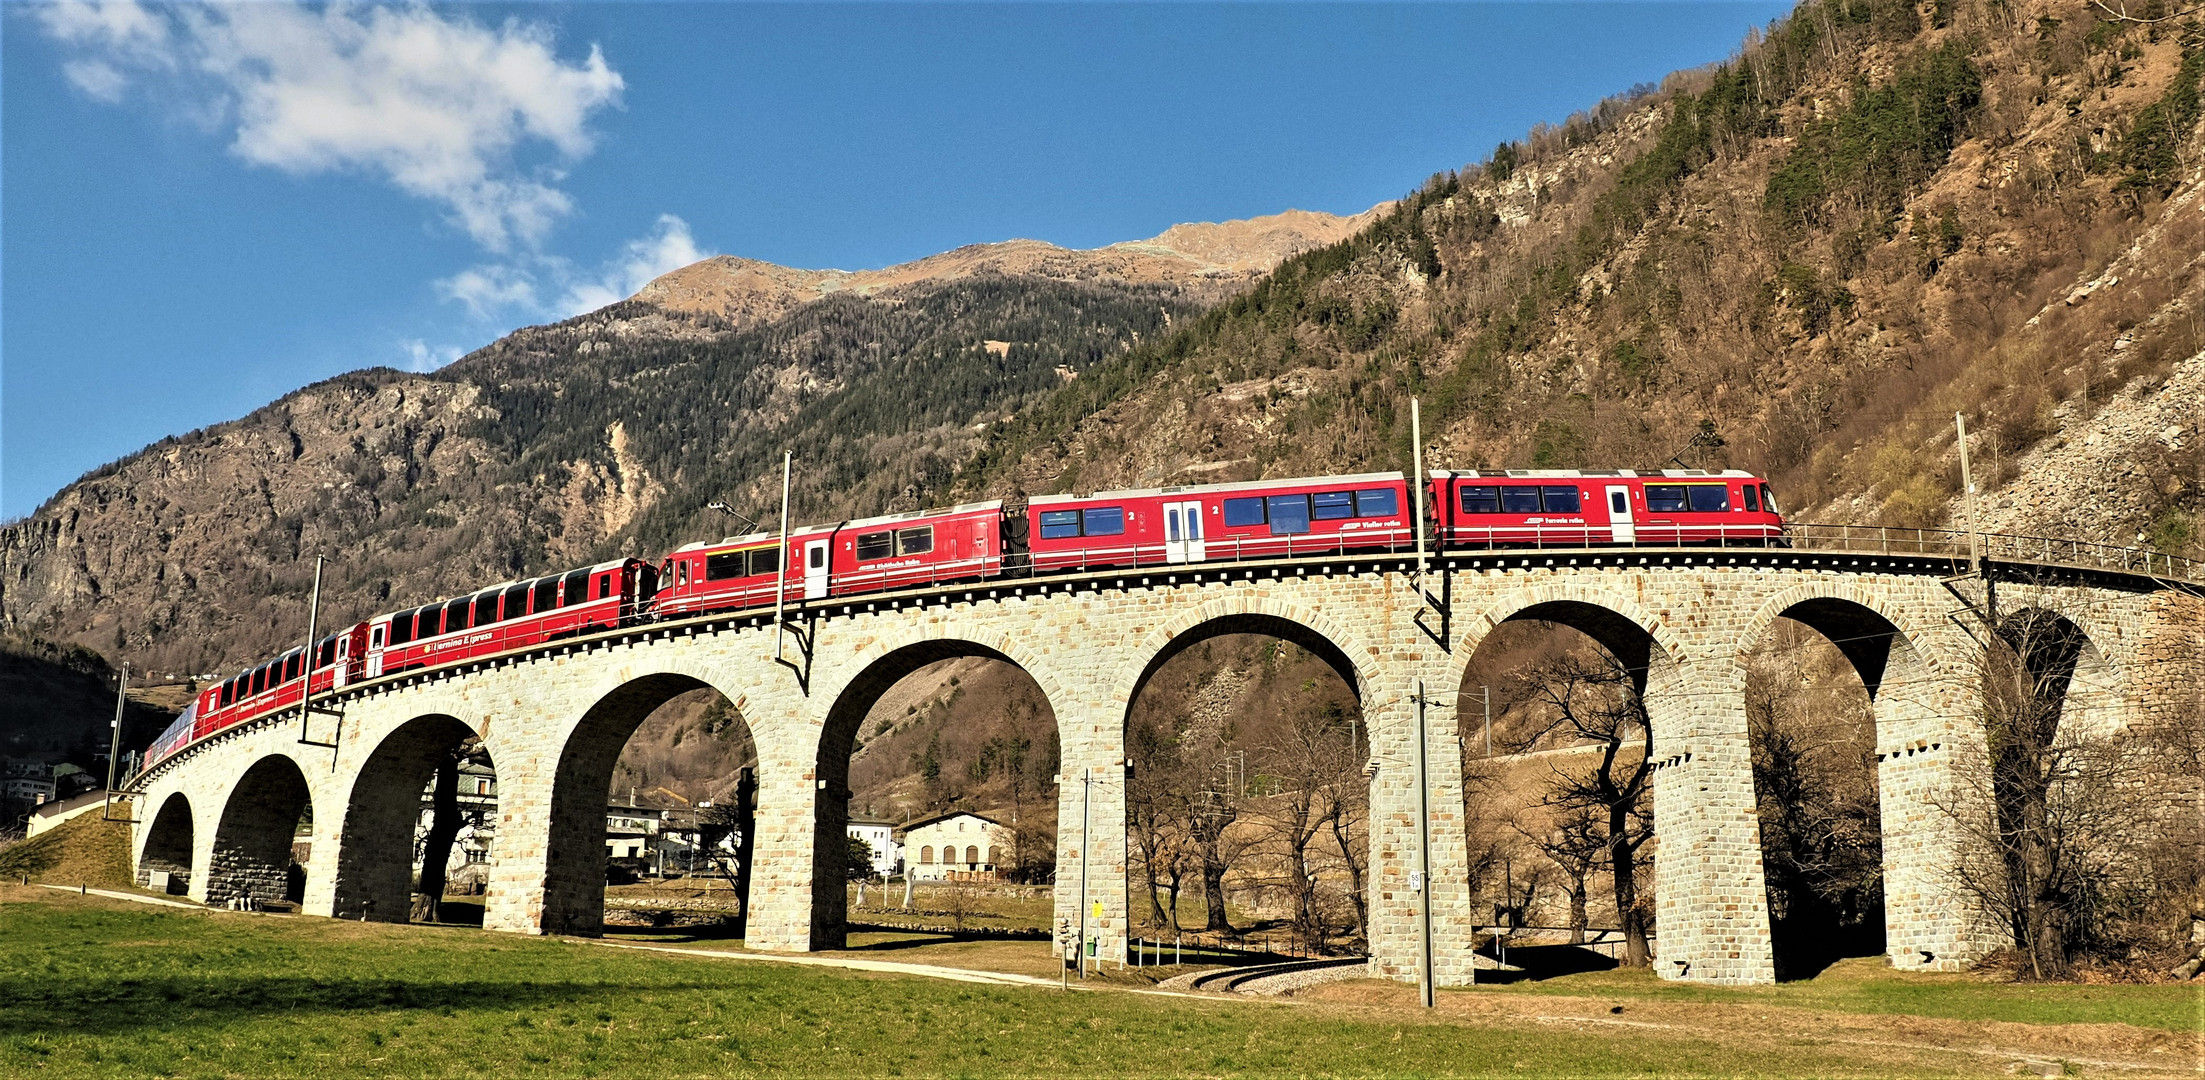 Bernina Express